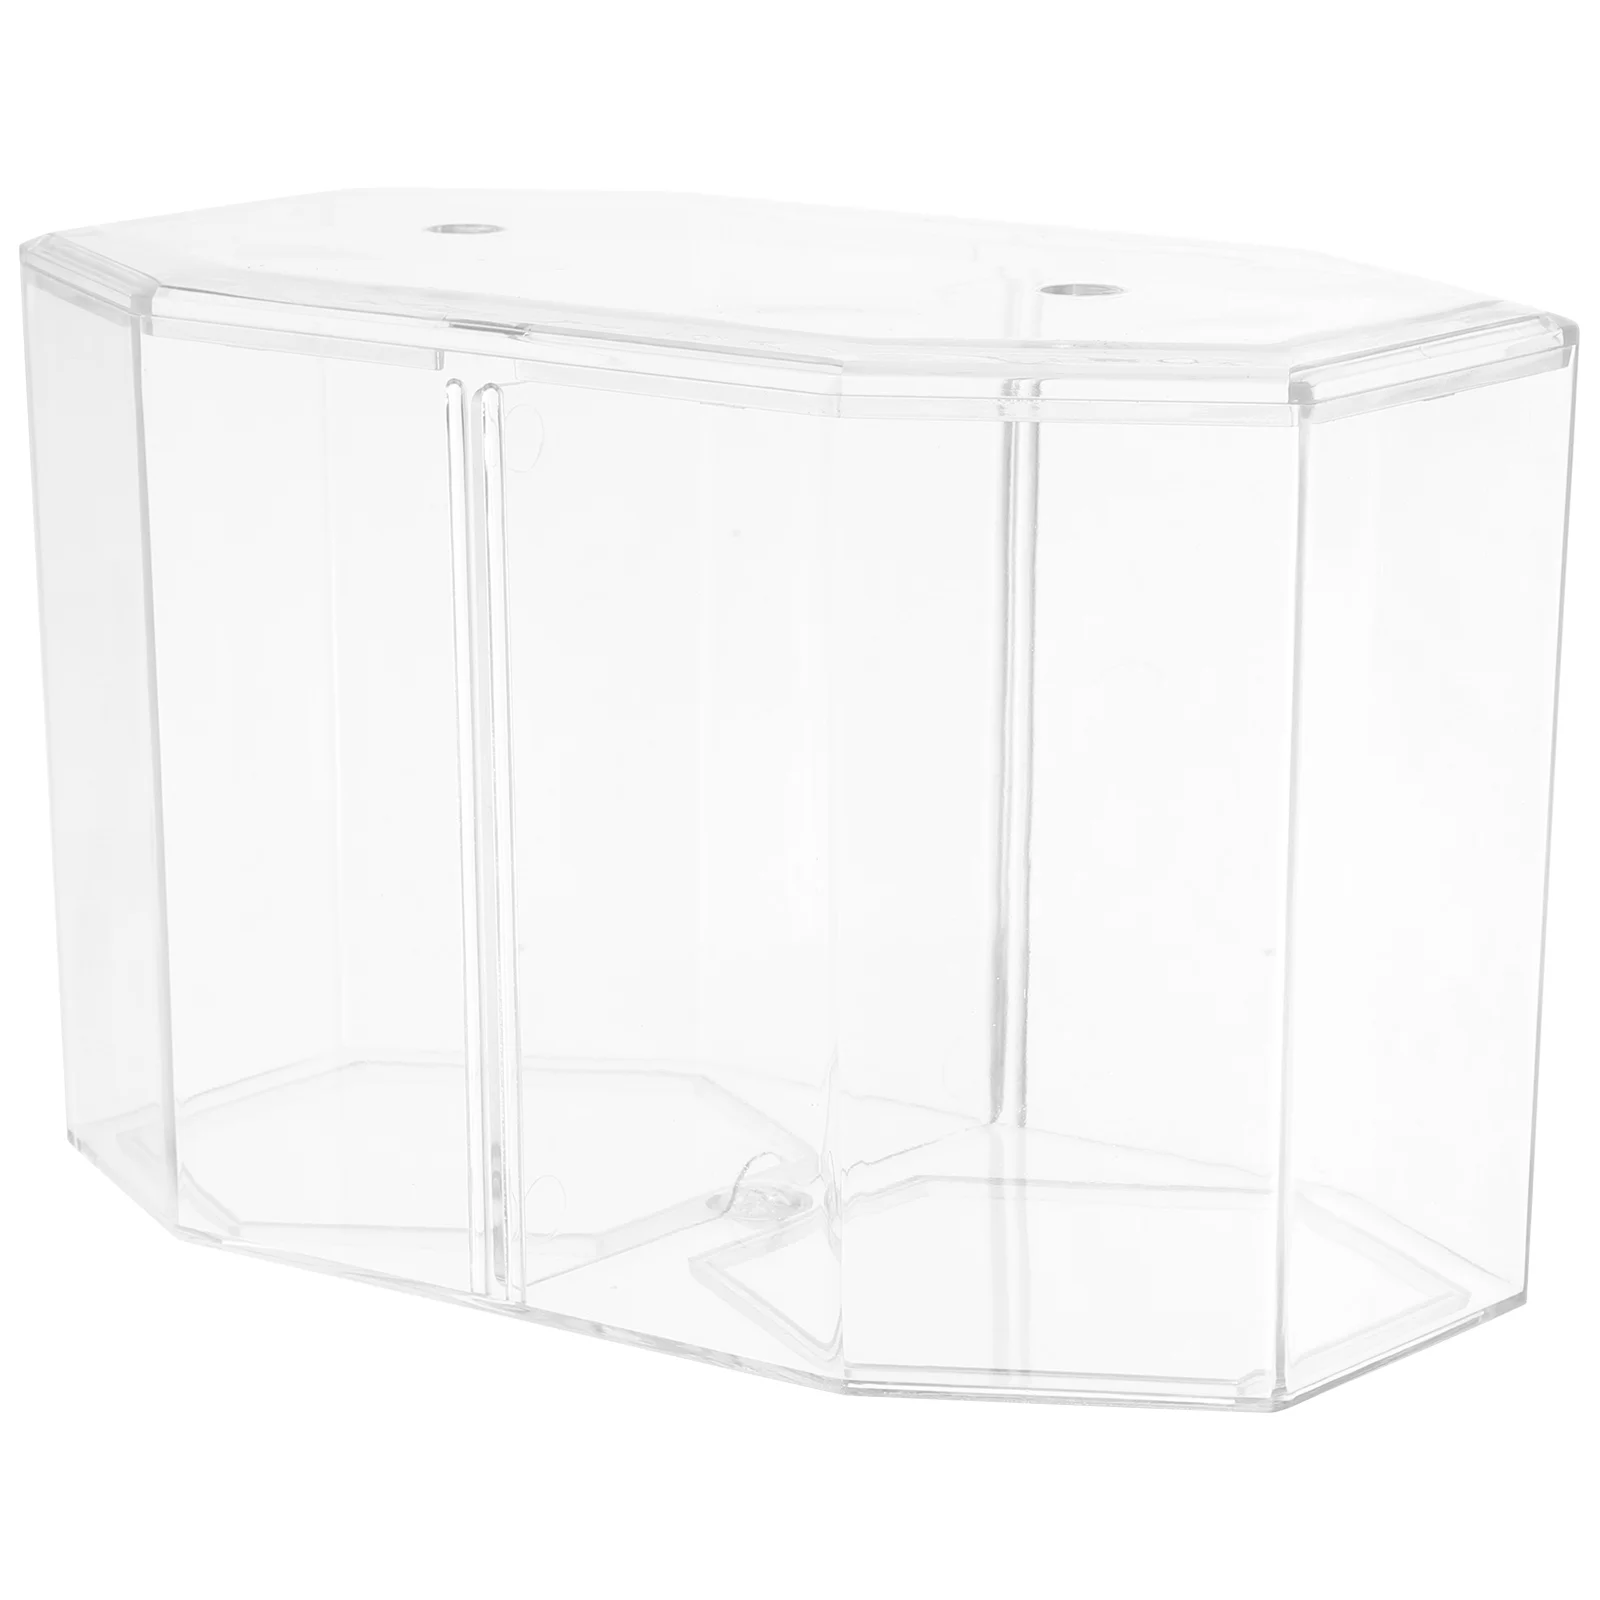 Восьмиугольный контейнер для разведения креветок Бетта, аквариум с золотыми рыбками, акриловая перегородка, прозрачный аксессуар Изображение 0